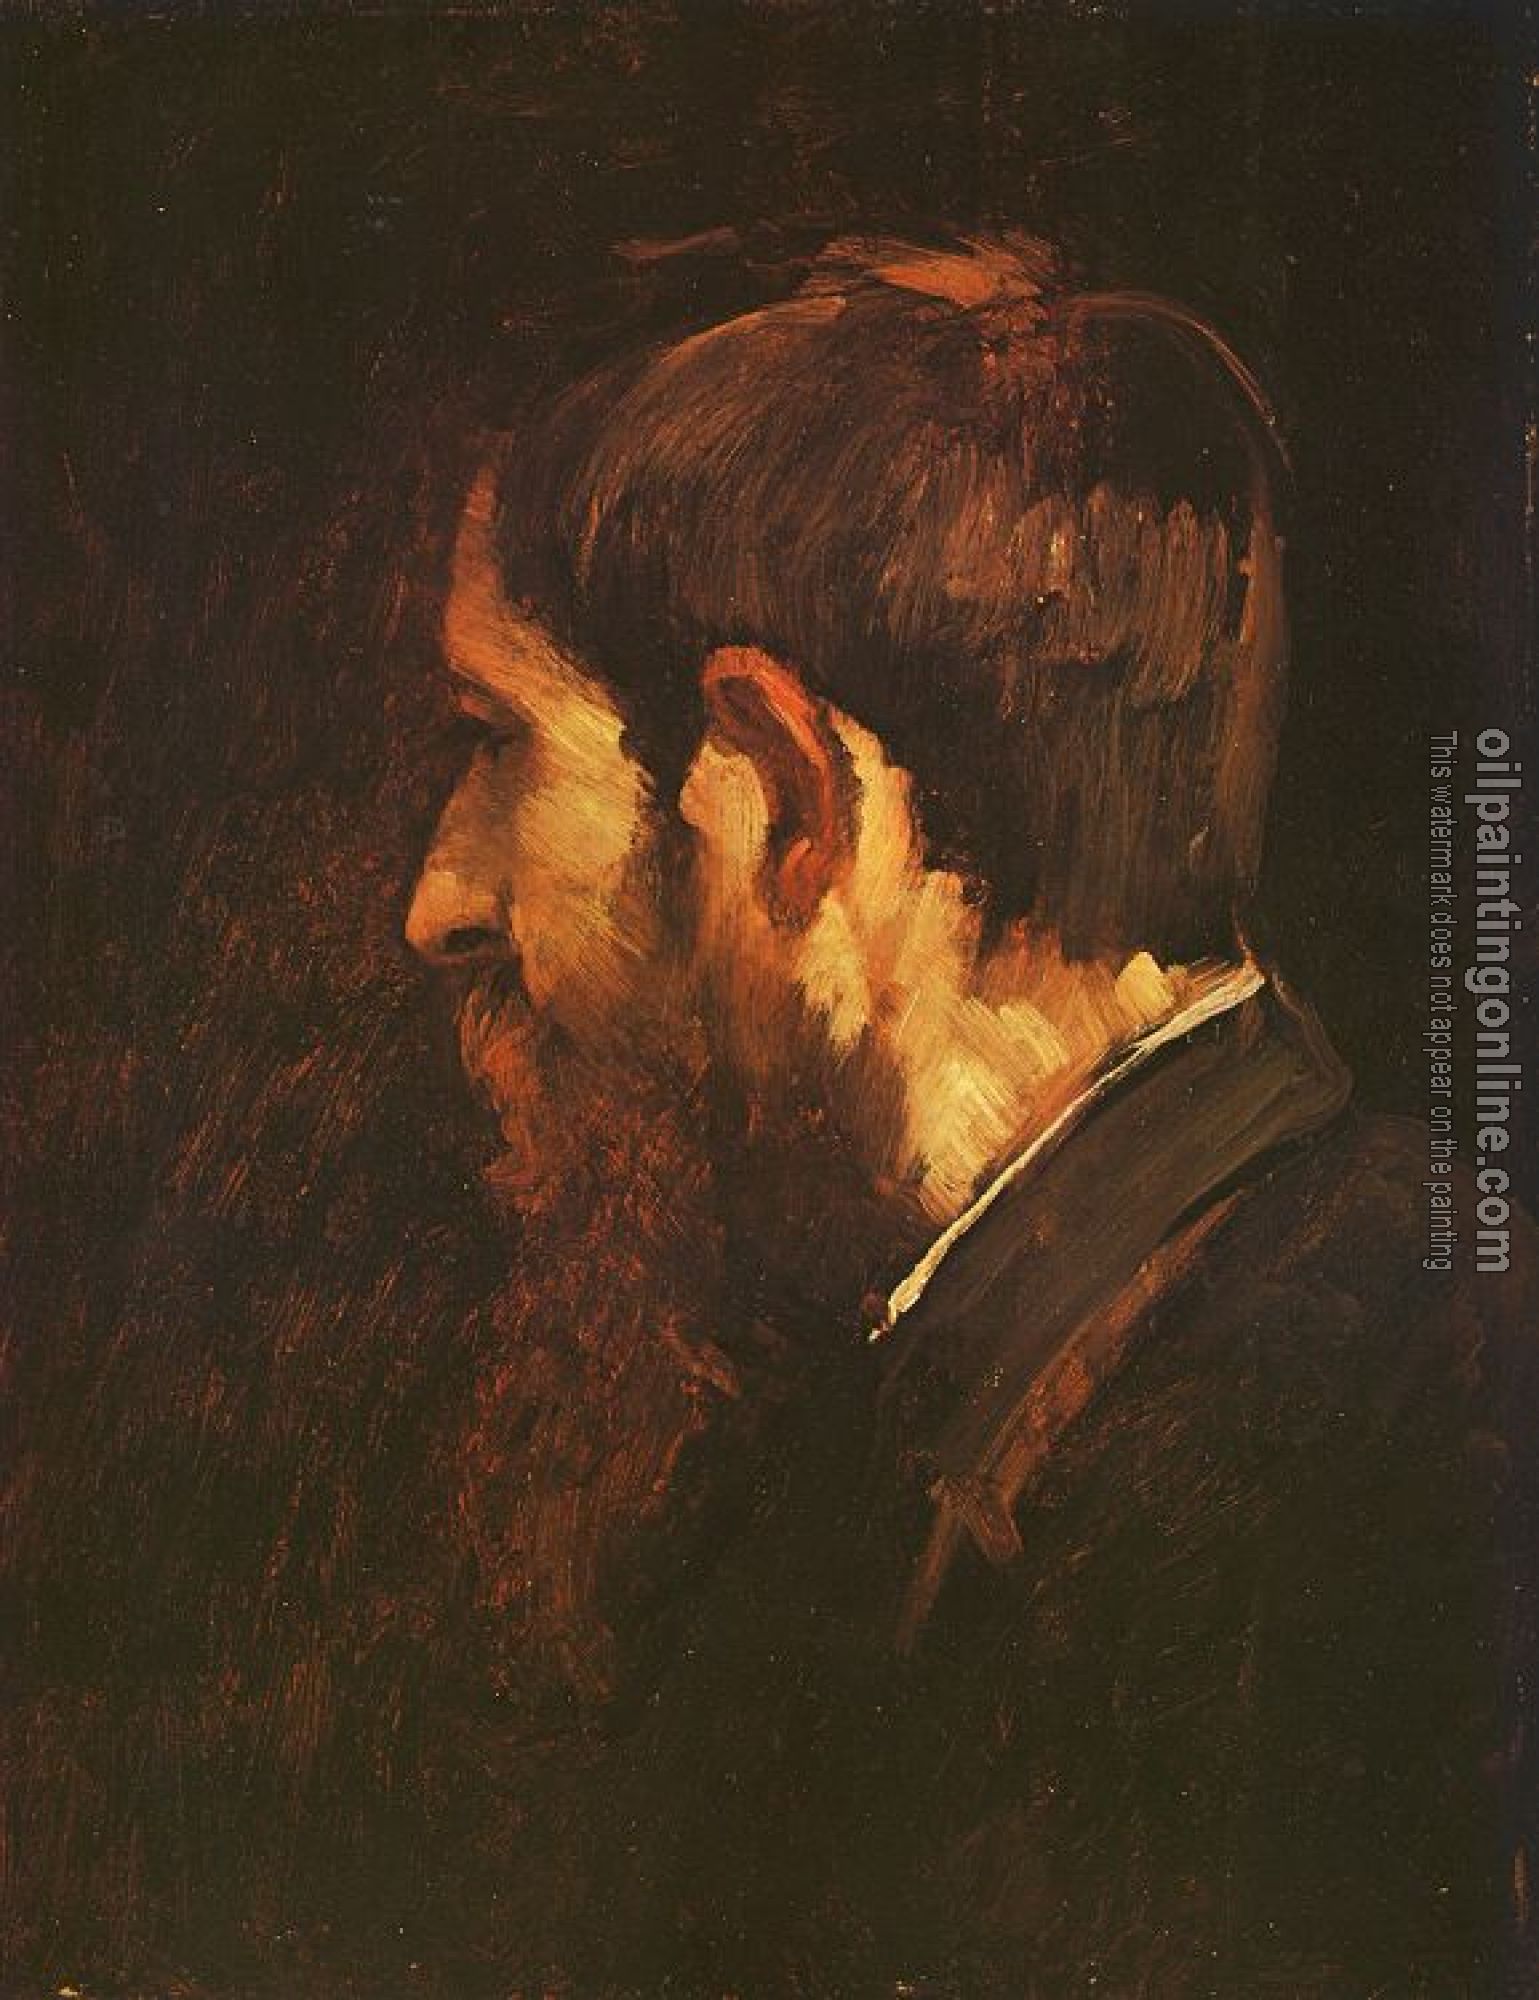 Munkacsy, Mihaly - Portrait of Laszlo Paal